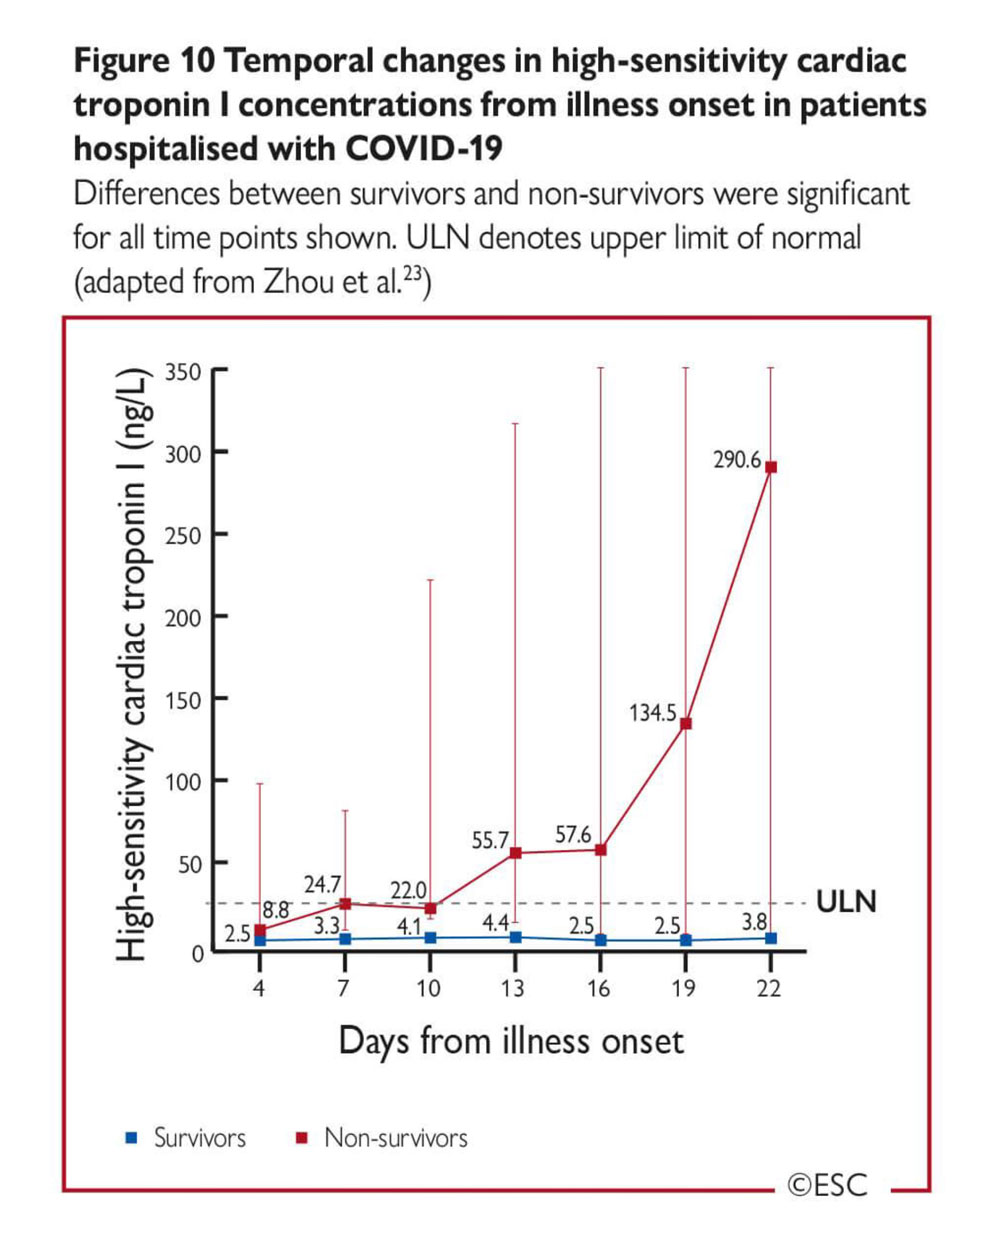 Figure 10 – Evolution des concentrations de troponine ultra-sensible au cours de la maladie chez les patients atteints du COVID-19 hospitalisés